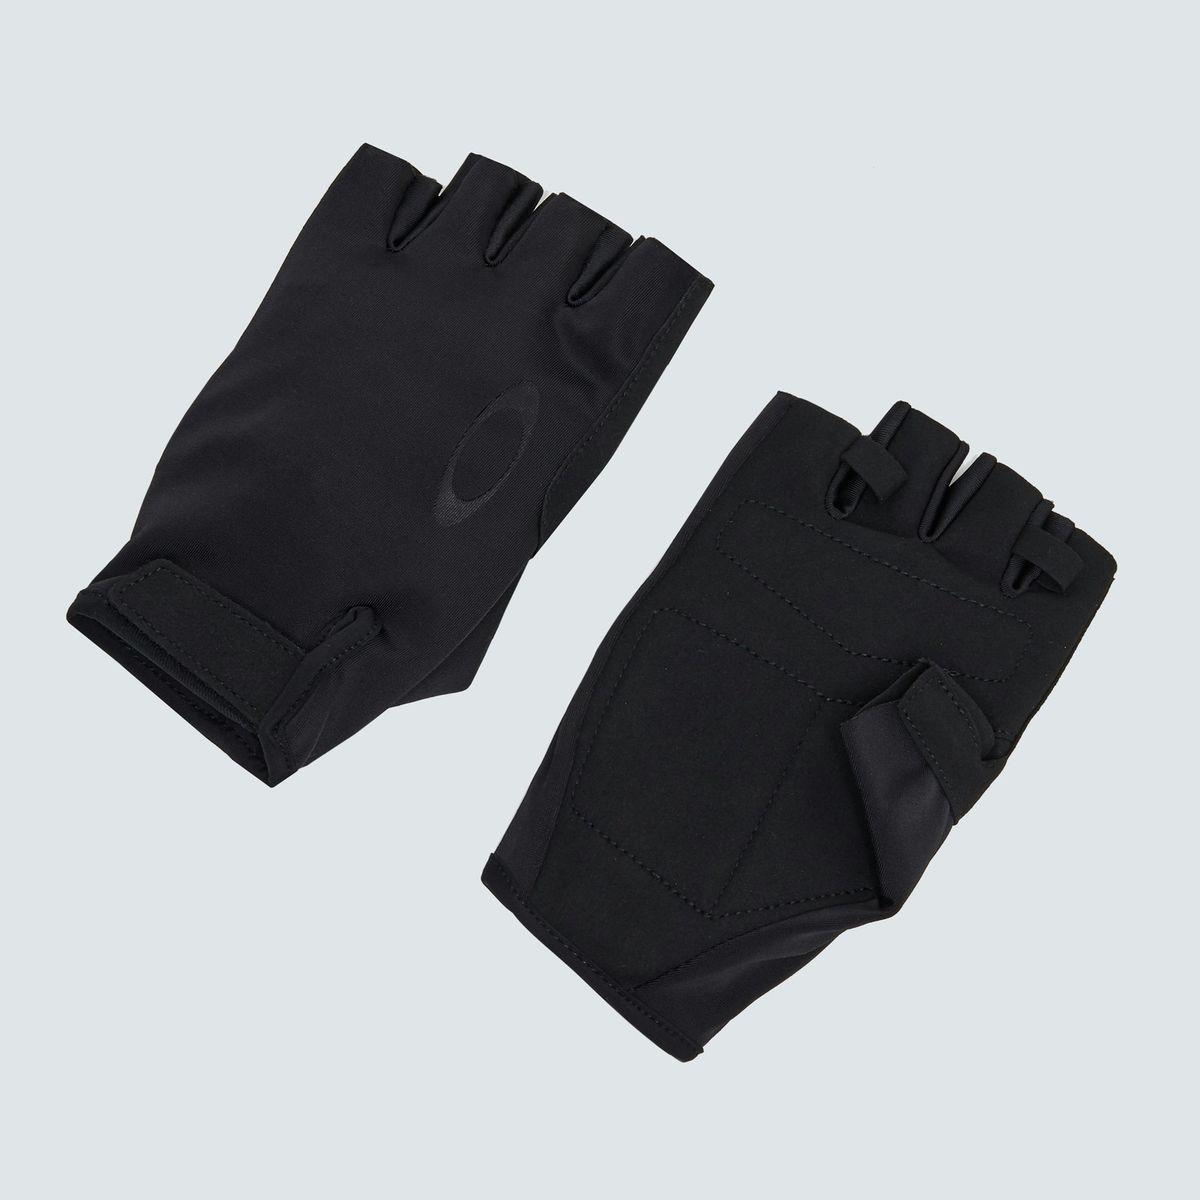 Mitt/Gloves 2.0